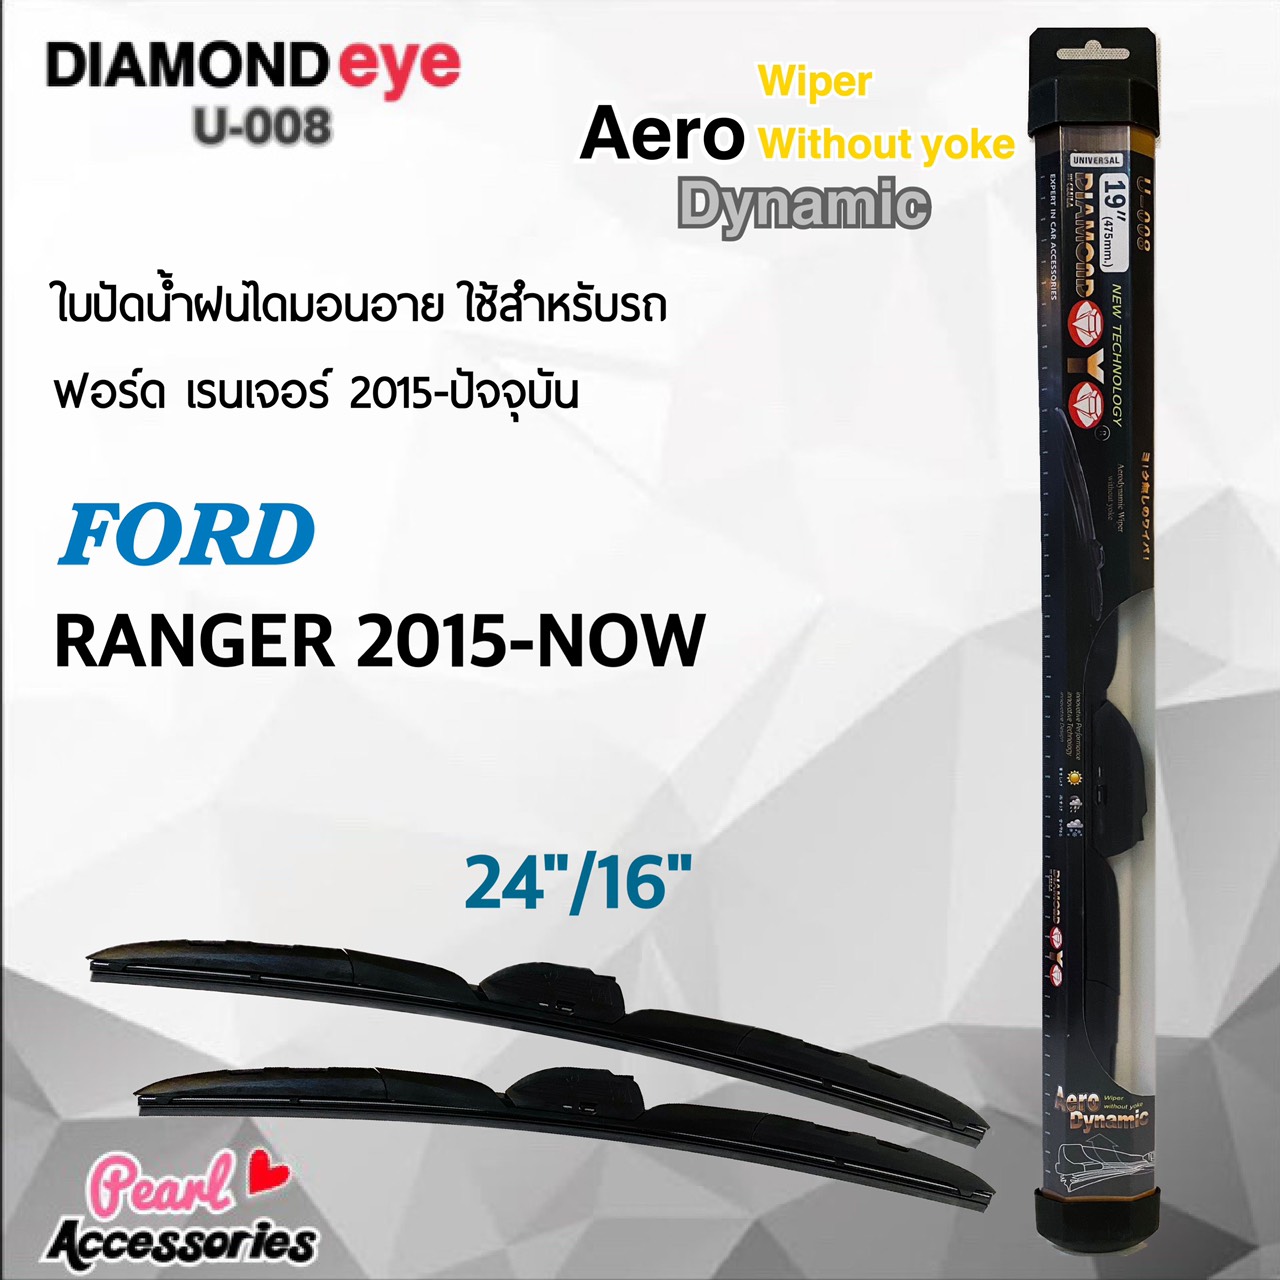 ใหม่ล่าสุด Diamond Eye 008 ใบปัดน้ำฝน ฟอร์ด เรนเจอร์ 2015-ปัจจุบัน ขนาด 24